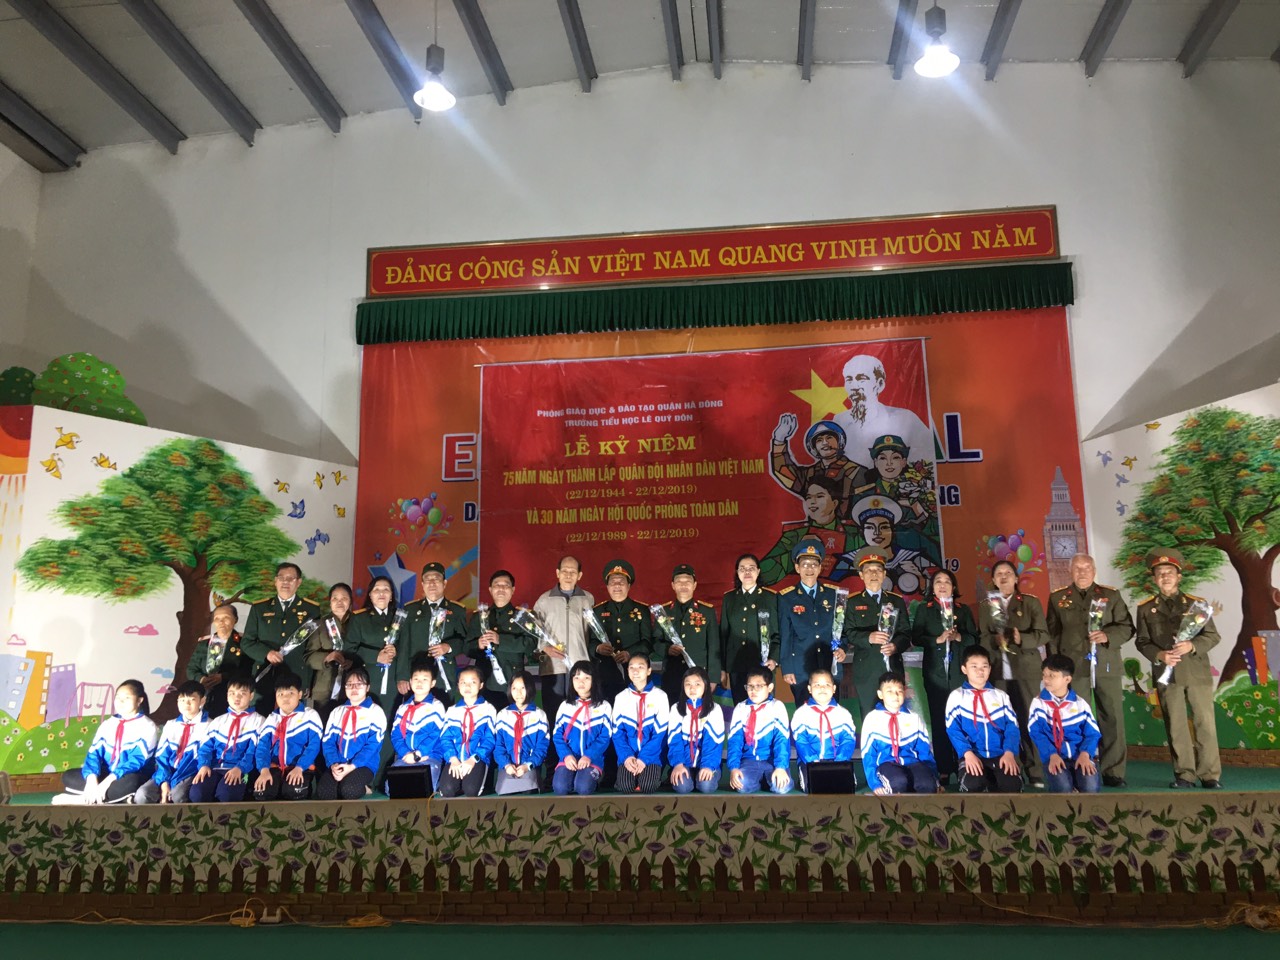 Mít tinh kỉ niệm ngày thành lập Quân đội Nhân dân Việt Nam 22-12